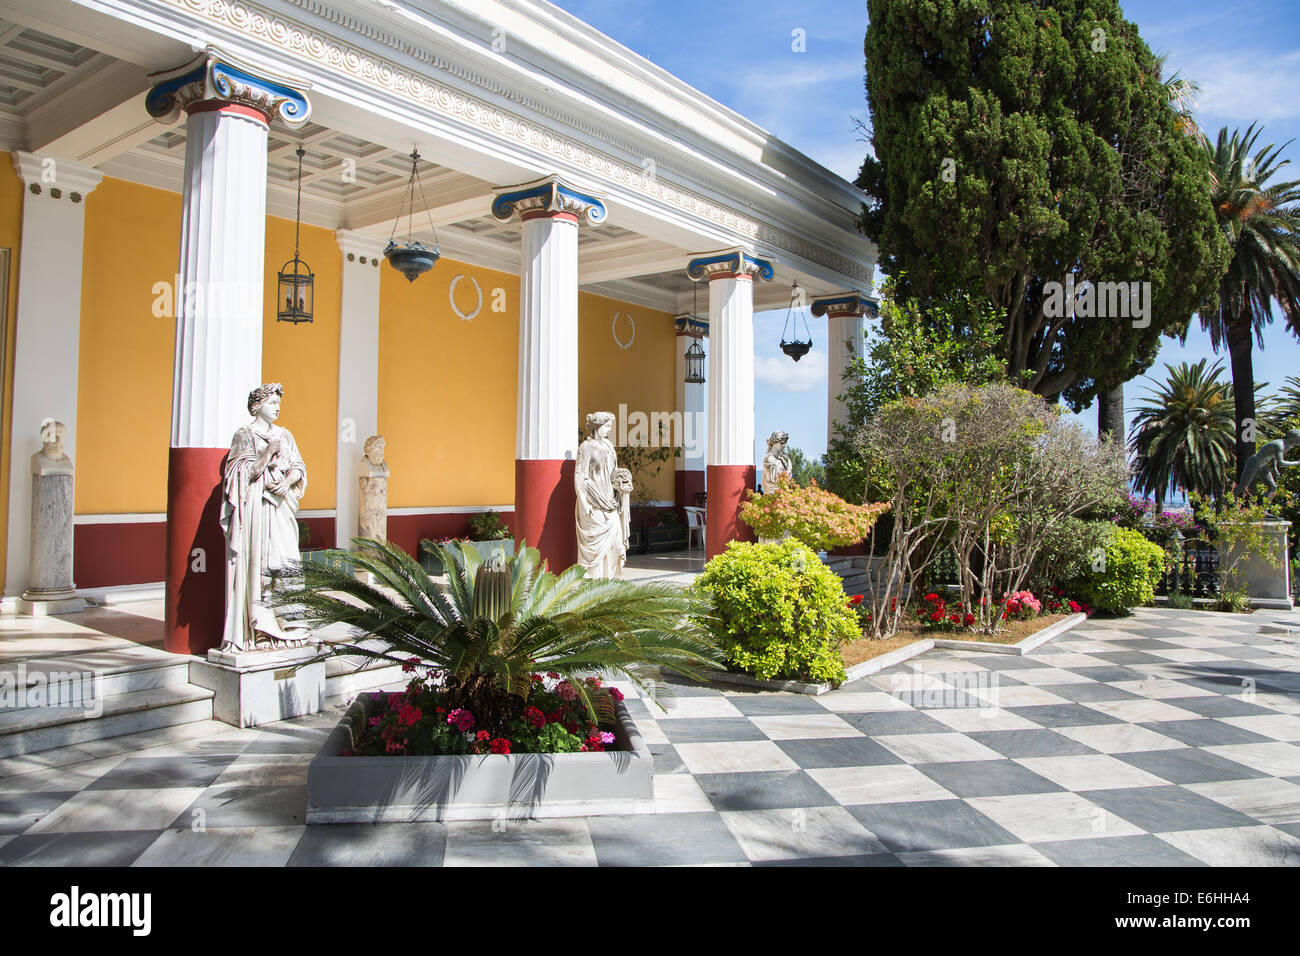 Tourisme à Corfou/Grèce : Château de l'Impératrice Elisabeth II d'Autriche - résidence d'été. Banque D'Images